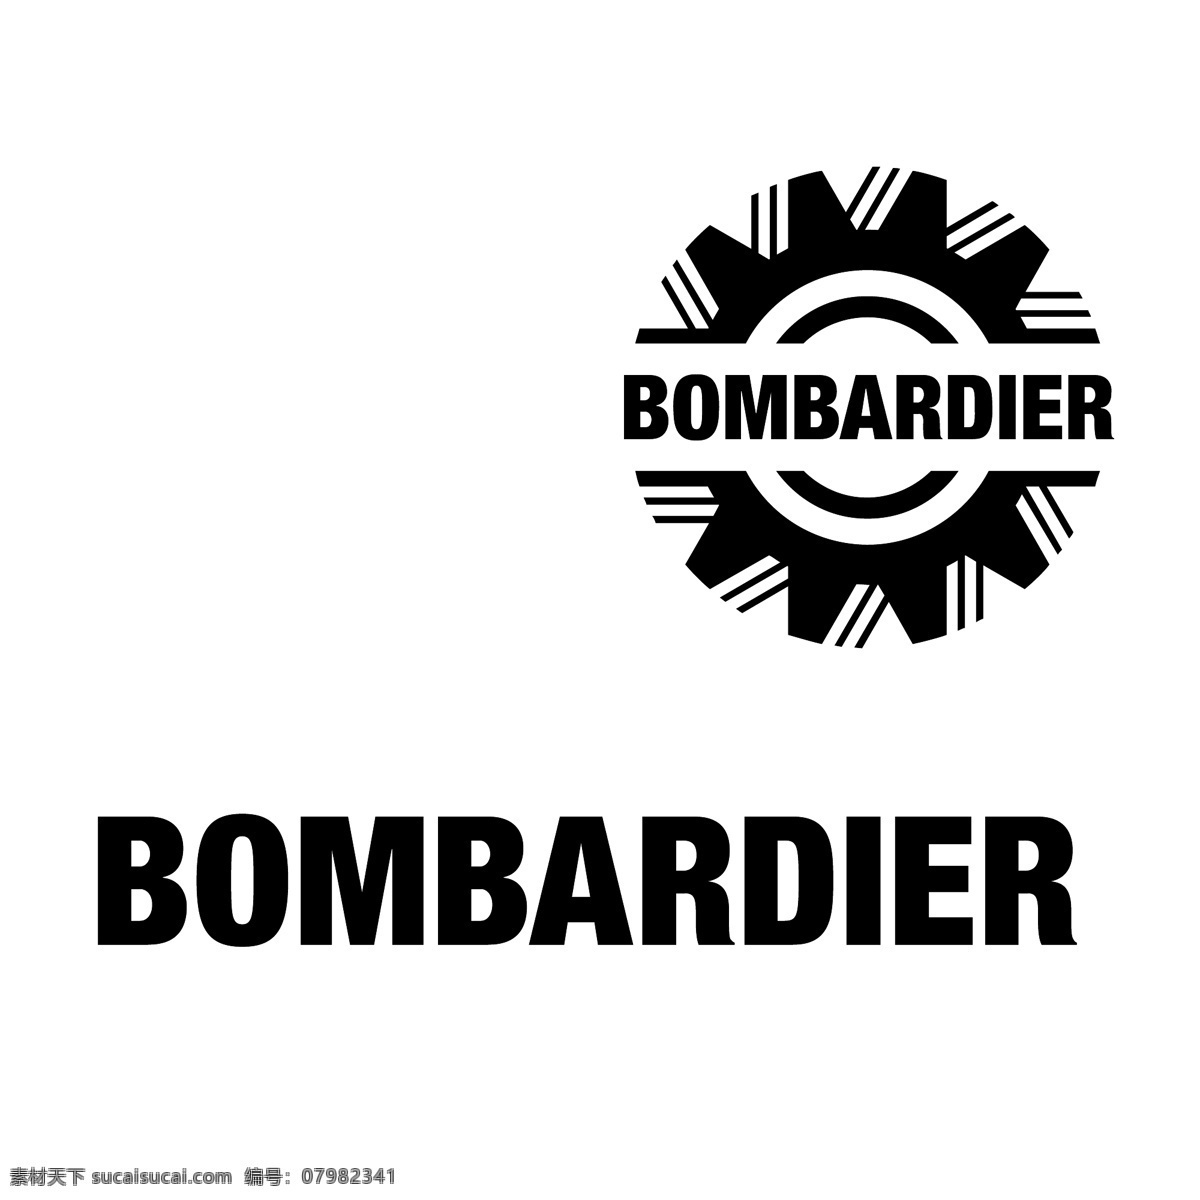 庞巴迪0 标志 庞巴迪 bombardier 矢量 插画 庞巴迪航空1 宇航 公司 矢量庞巴迪